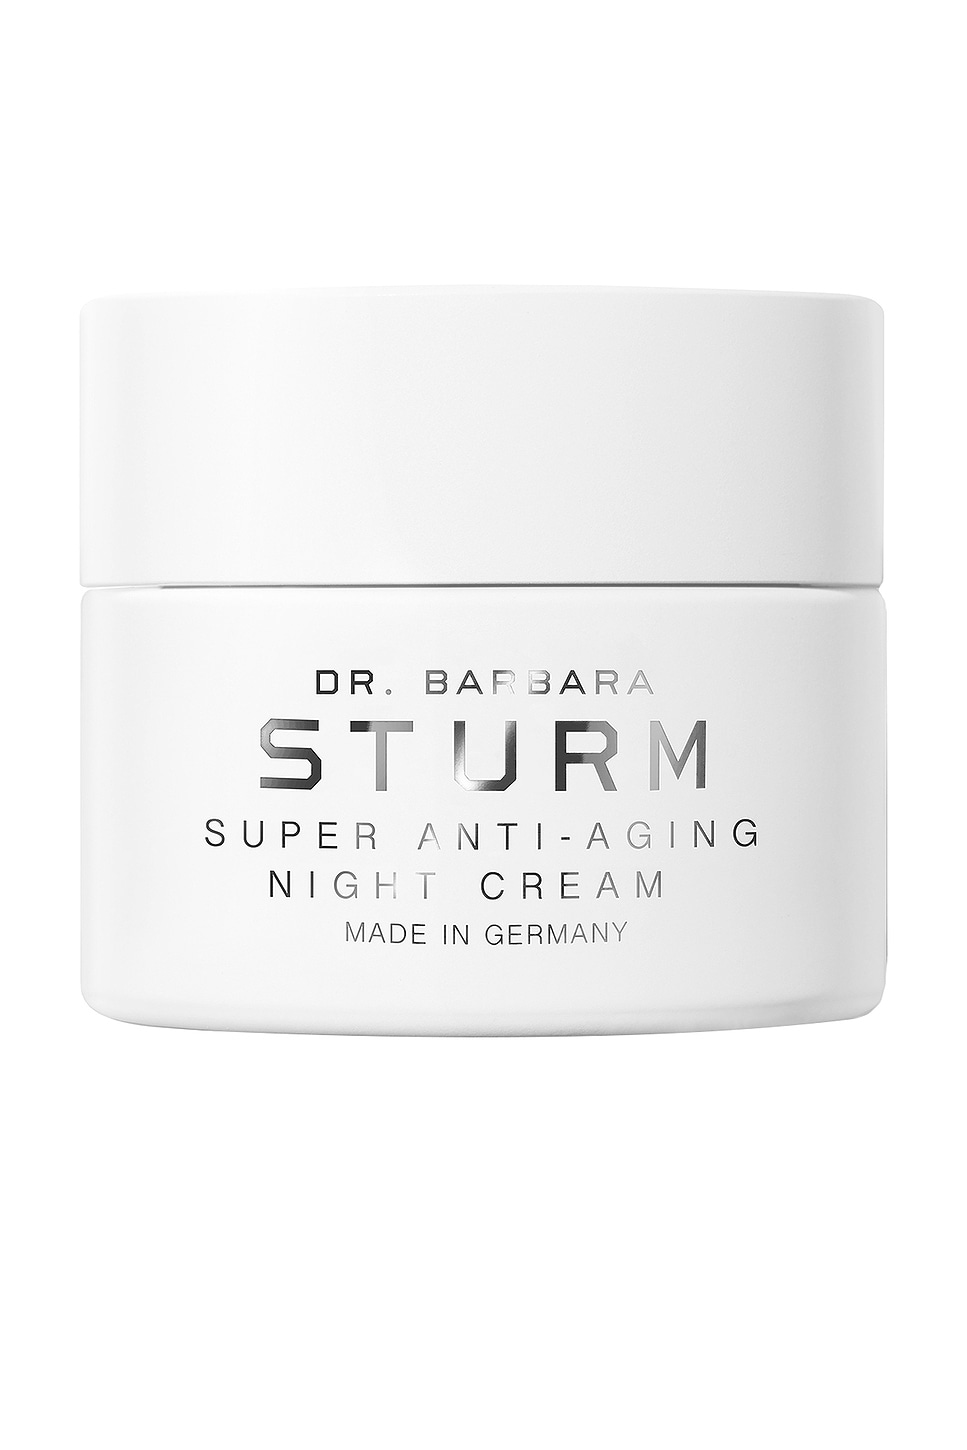 Super Anti-aging Night Cream in Beauty: NA